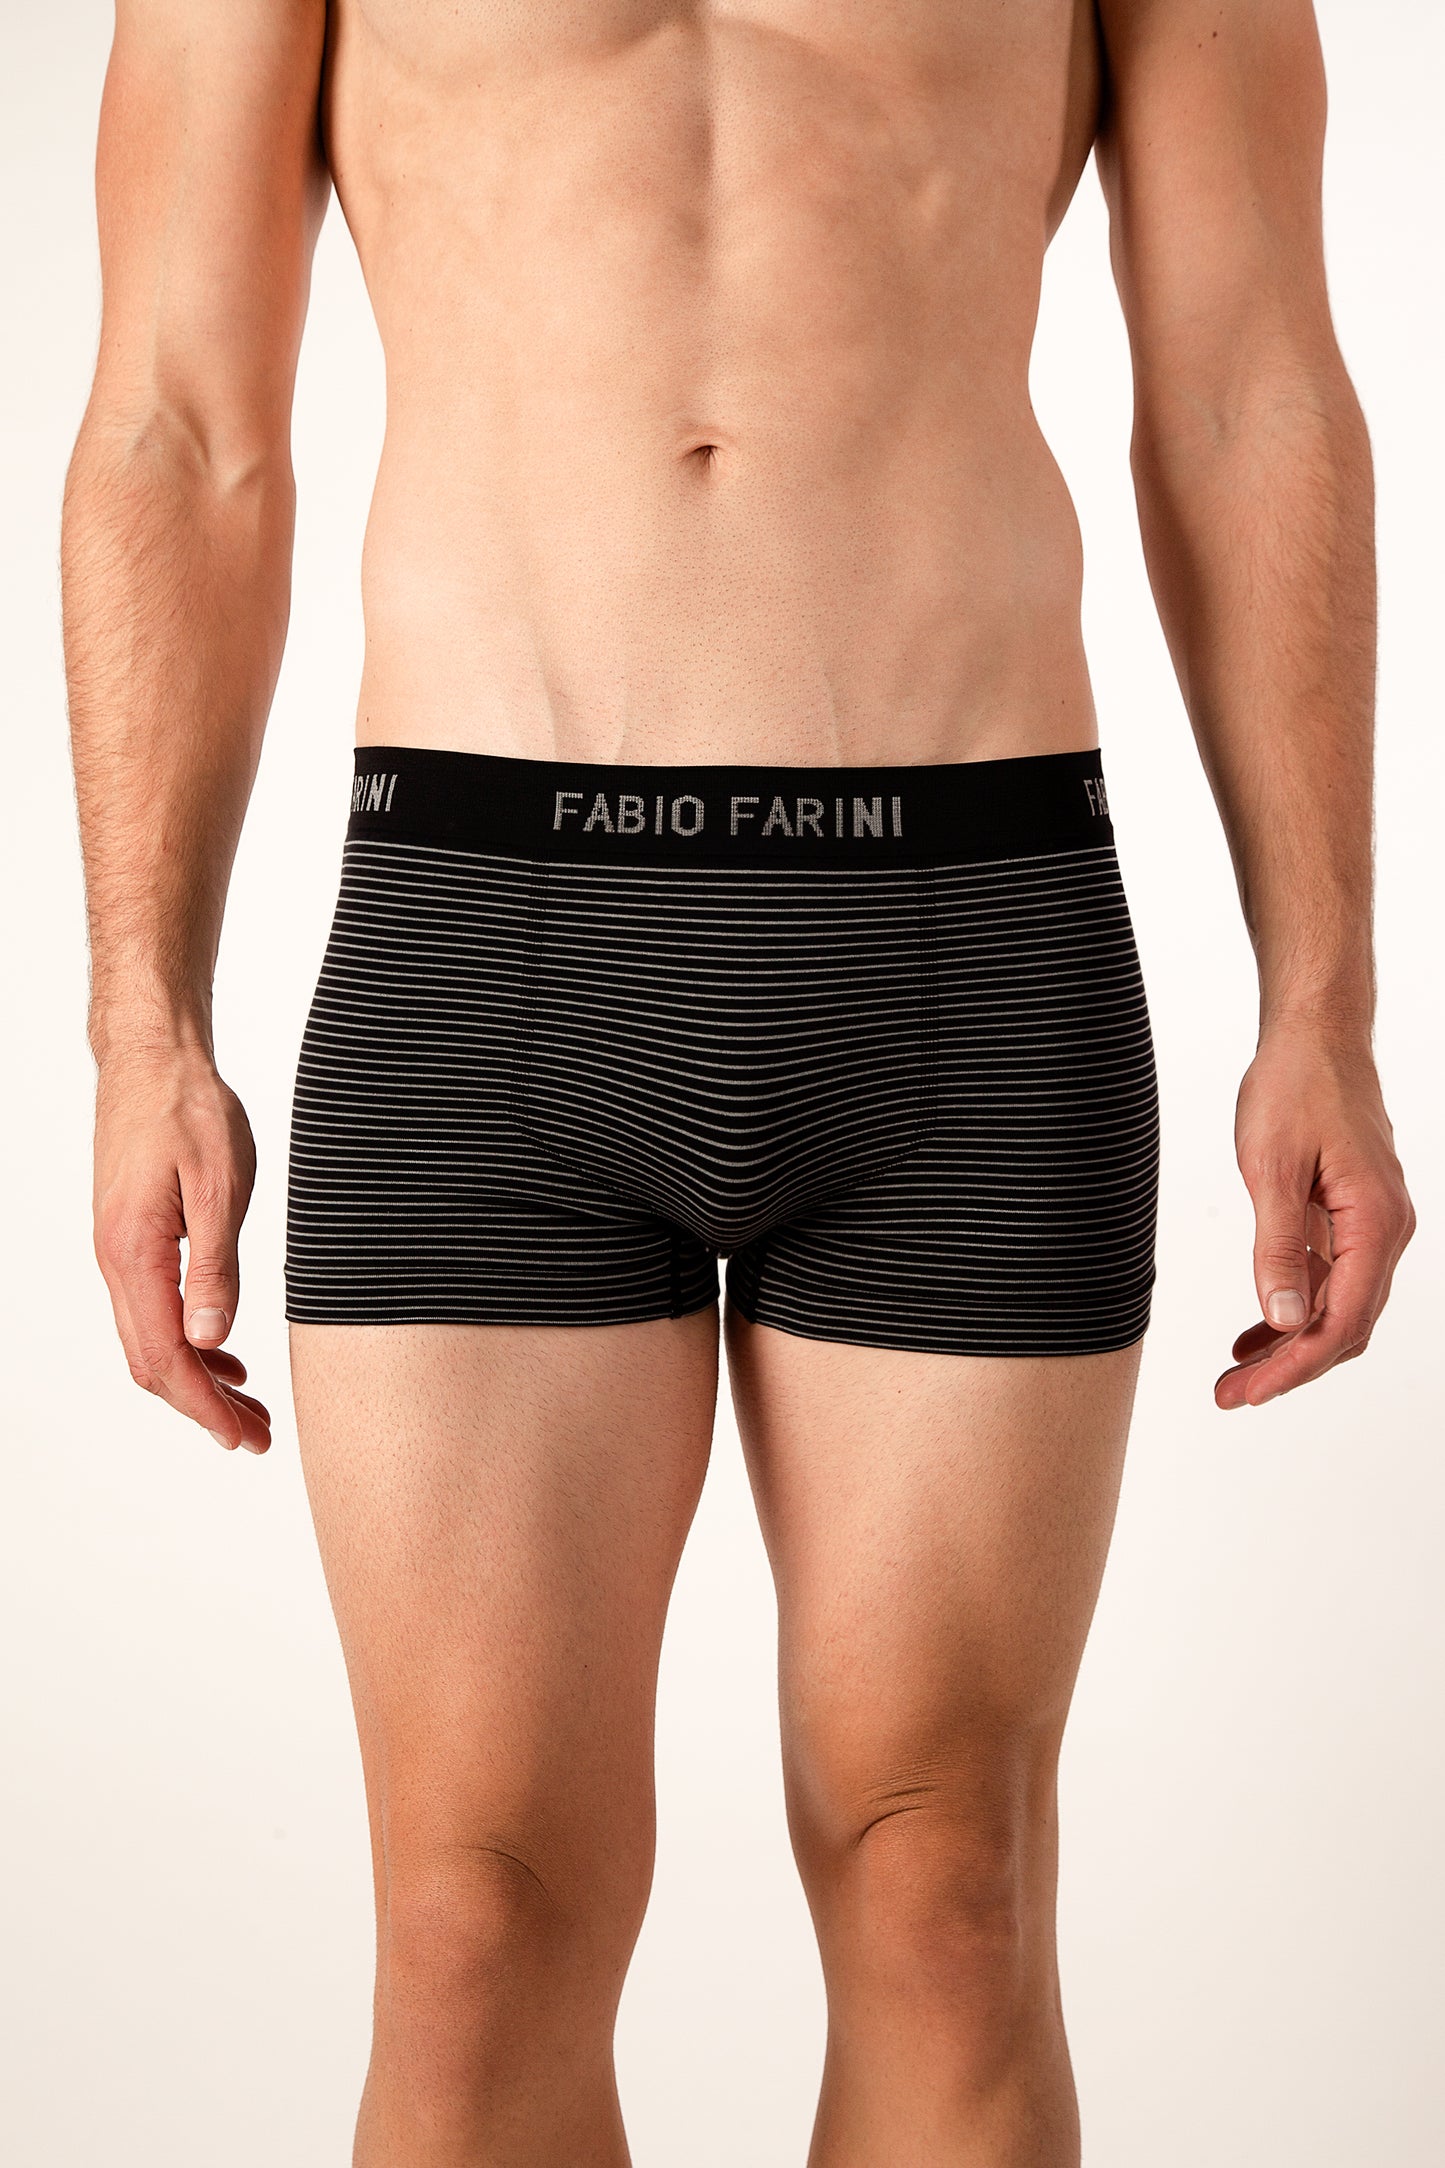 Fabio Farini Sparset Herren Boxershorts